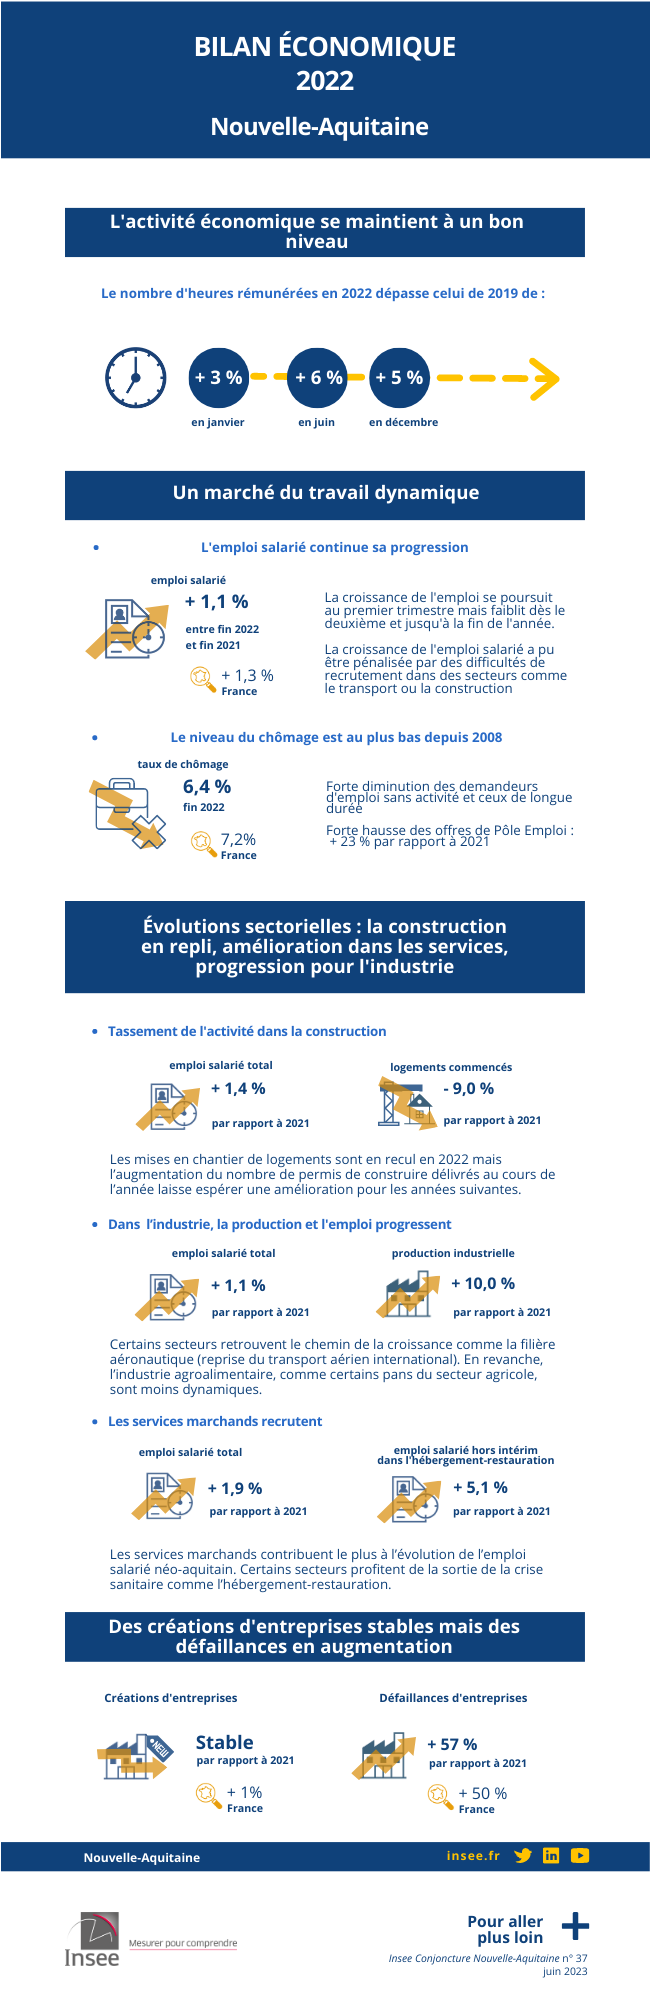 Bilan économique 2022 de Nouvelle-Aquitaine.